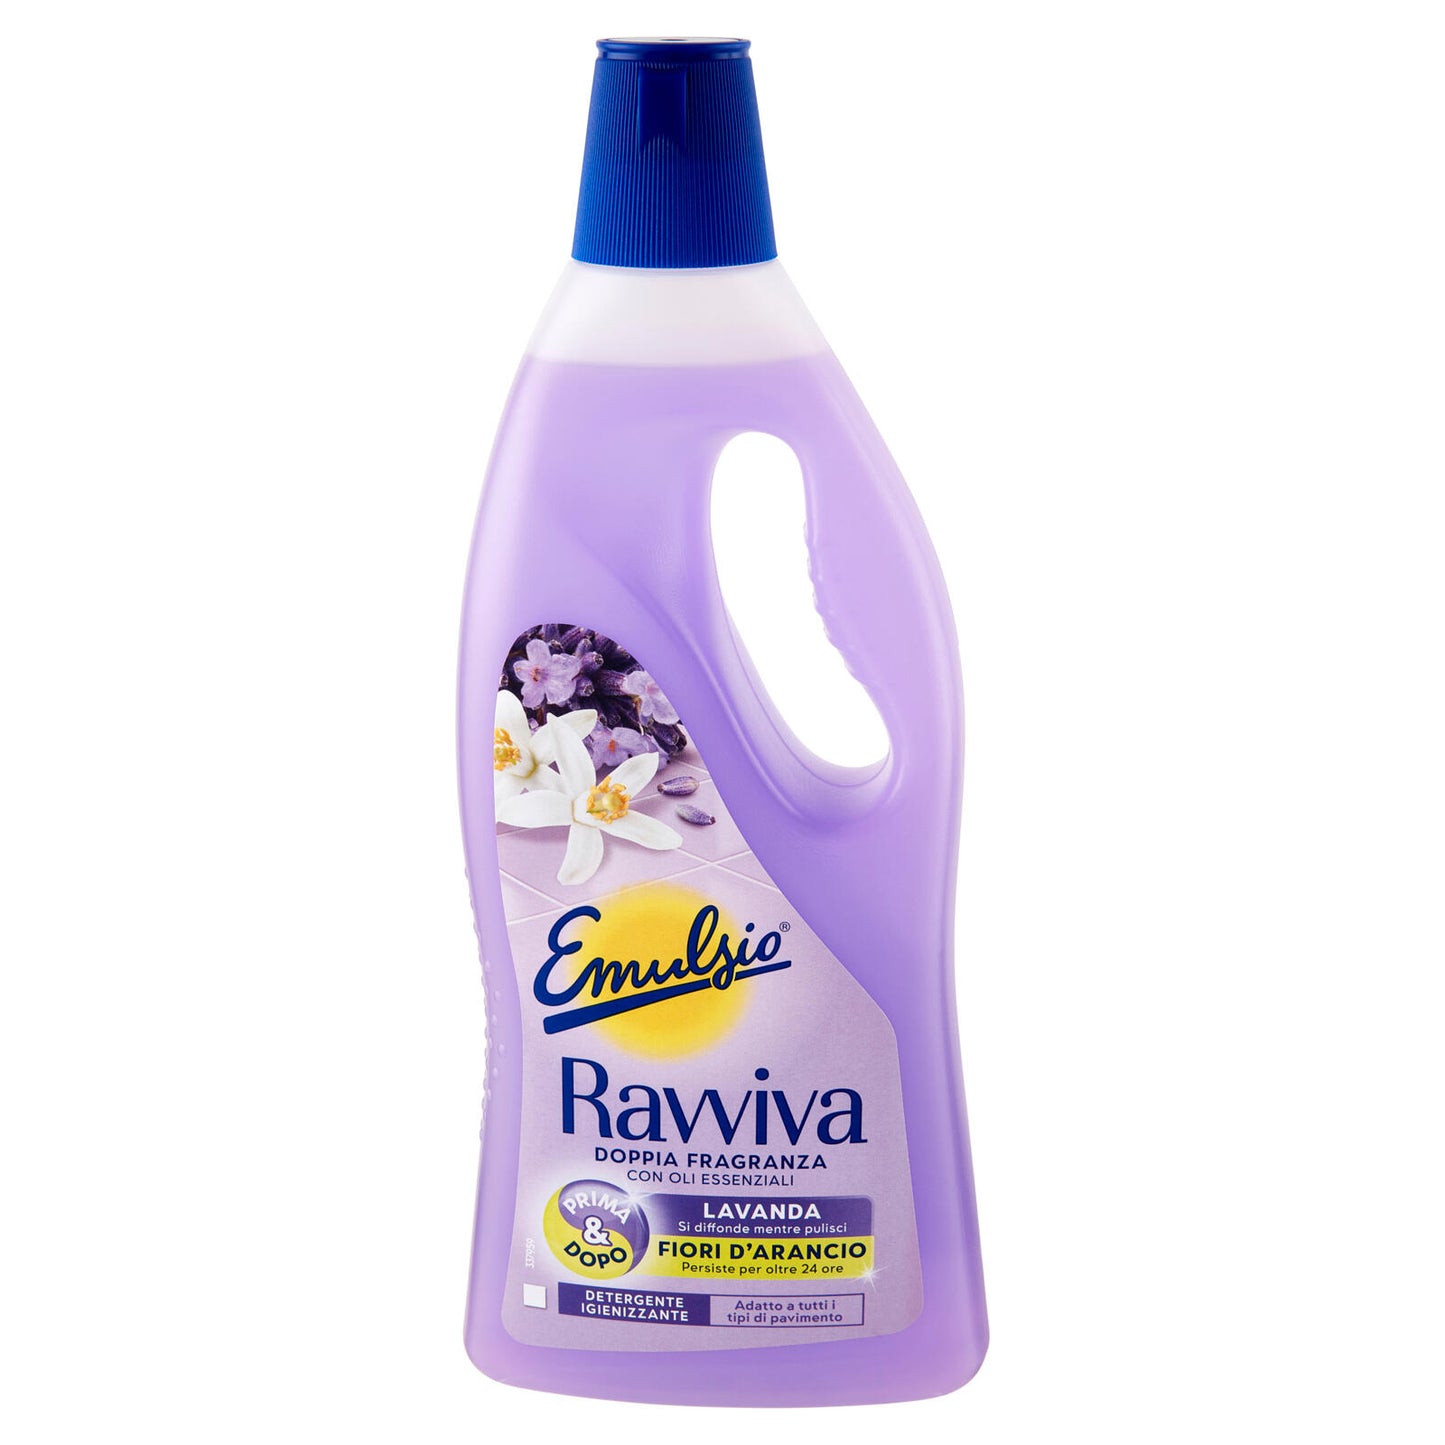 Emulsio Ravviva Doppia Fragranze Lavanda Fiori d'Arancio Detergente Igienizzante 750 ml